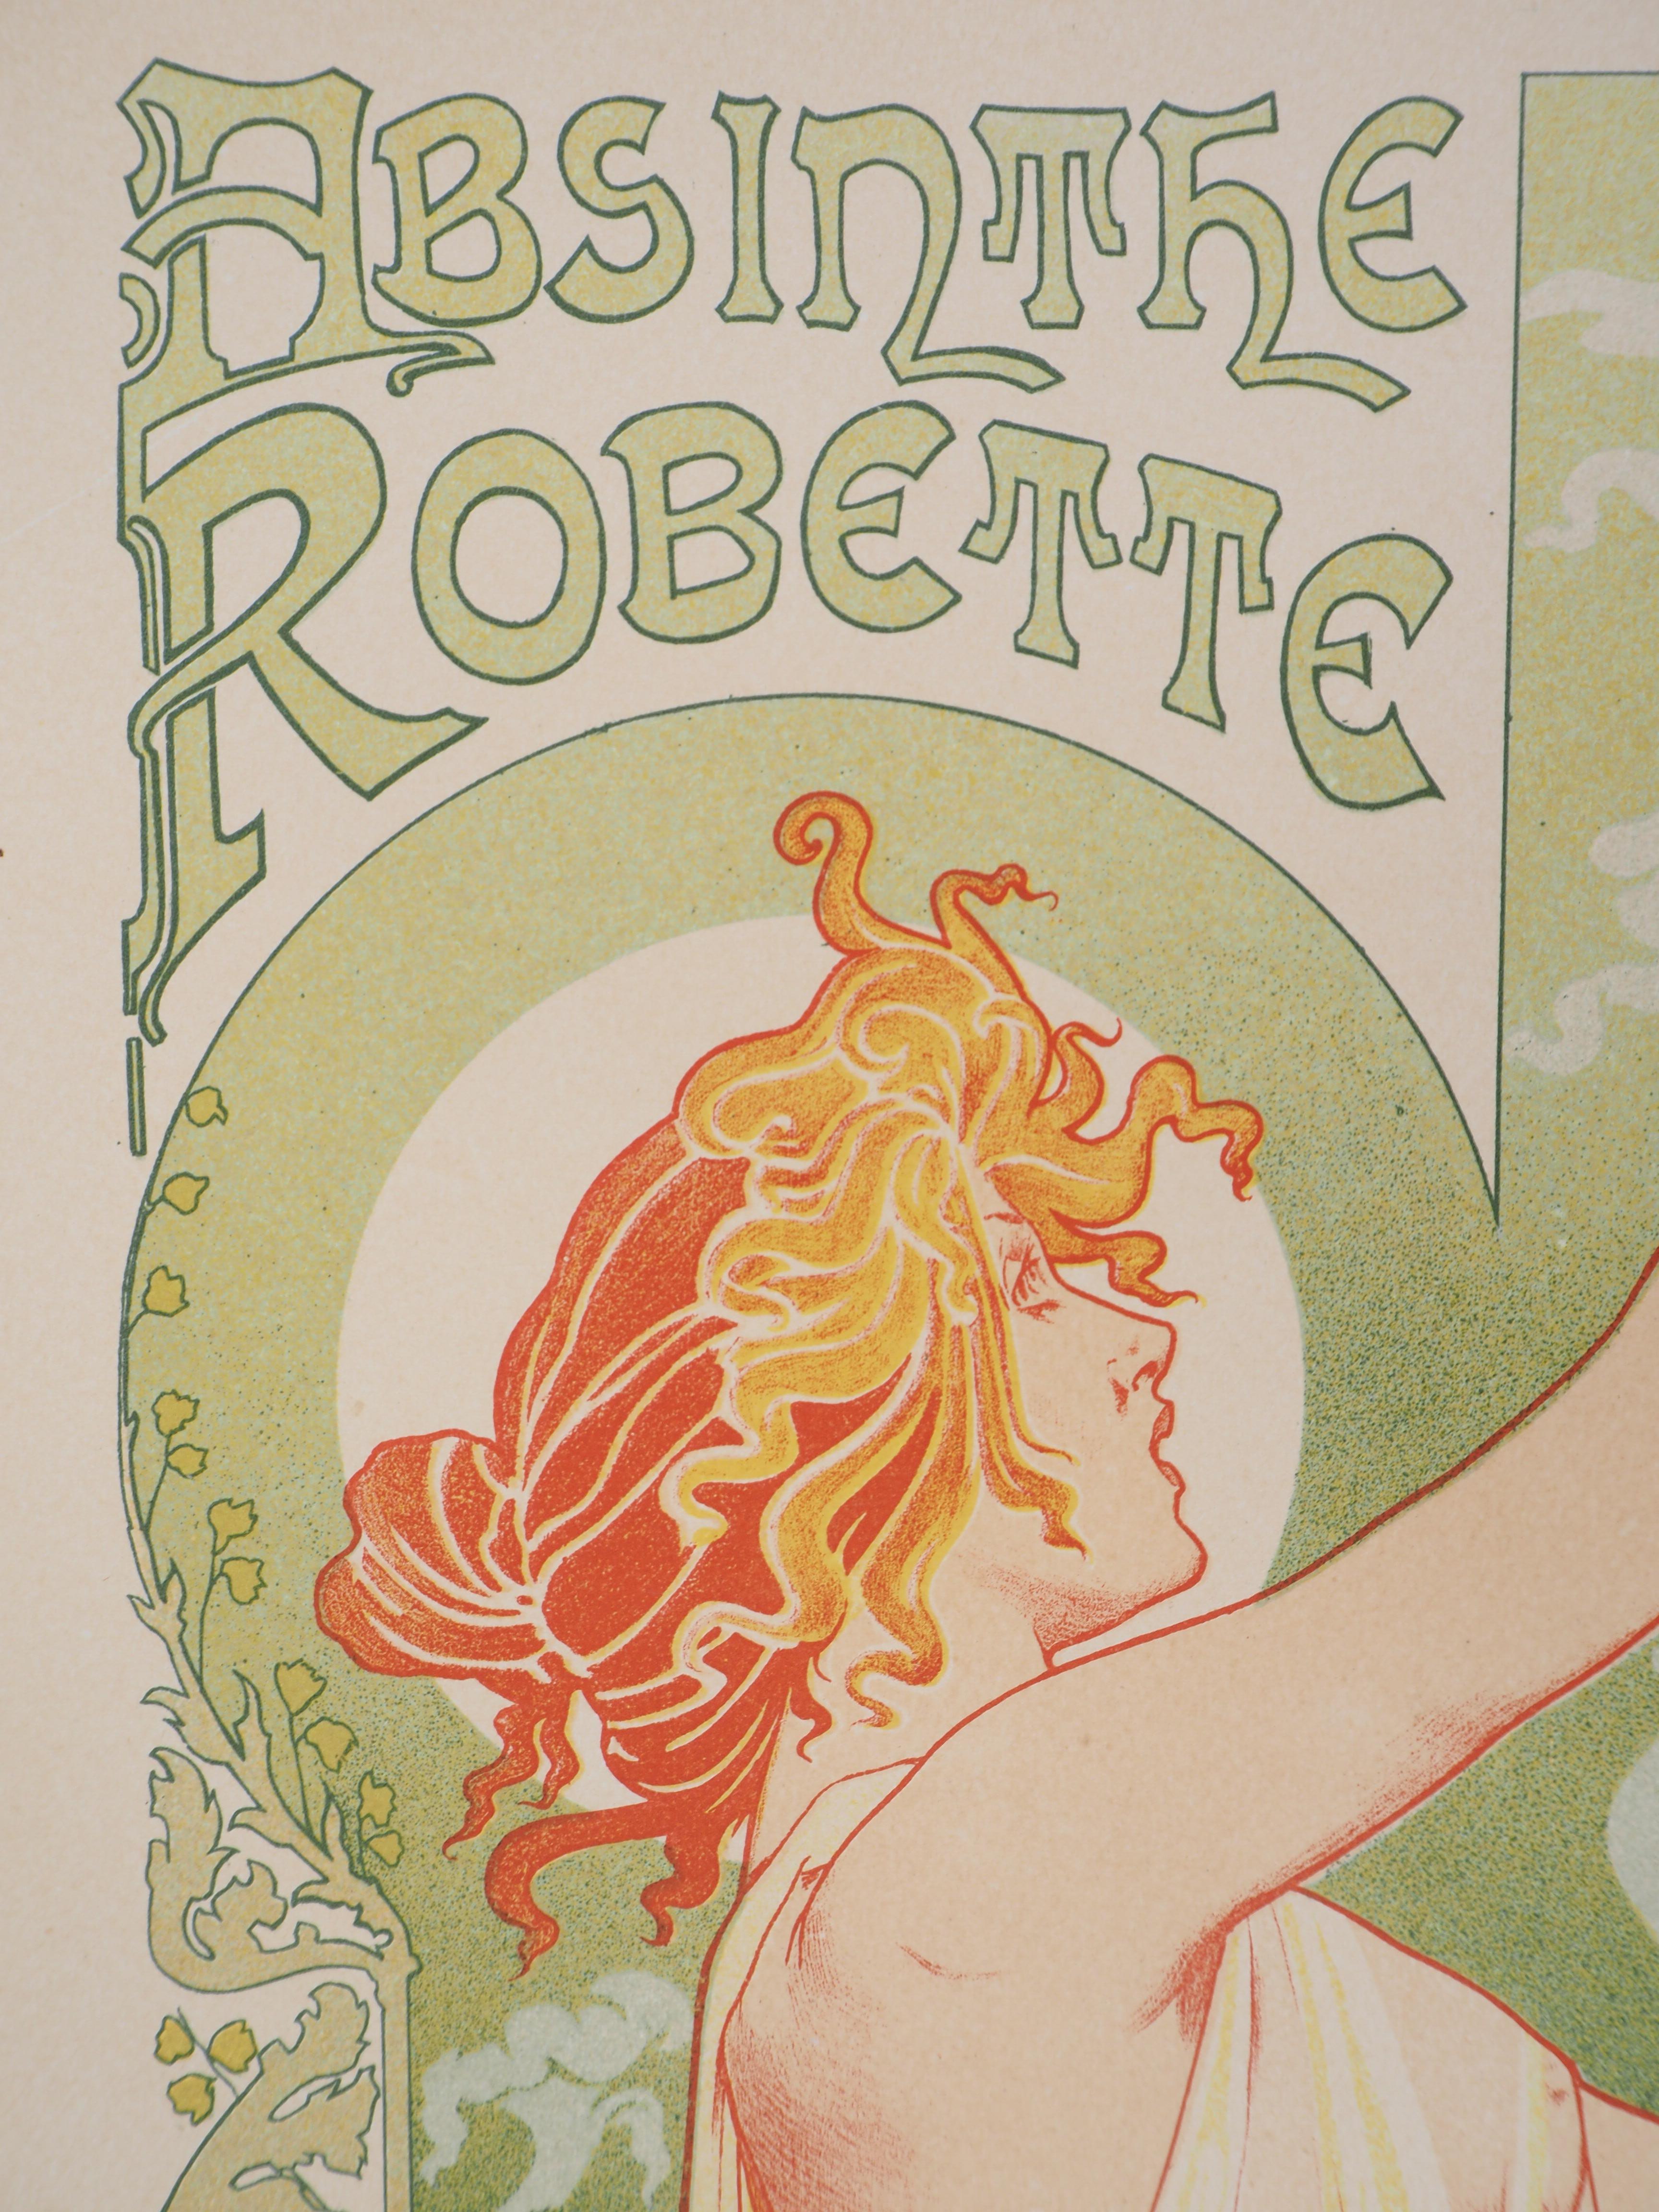 Absinthe Robette - Lithograph (Les Maîtres de l'Affiche), Imprimerie Chaix 1897 3